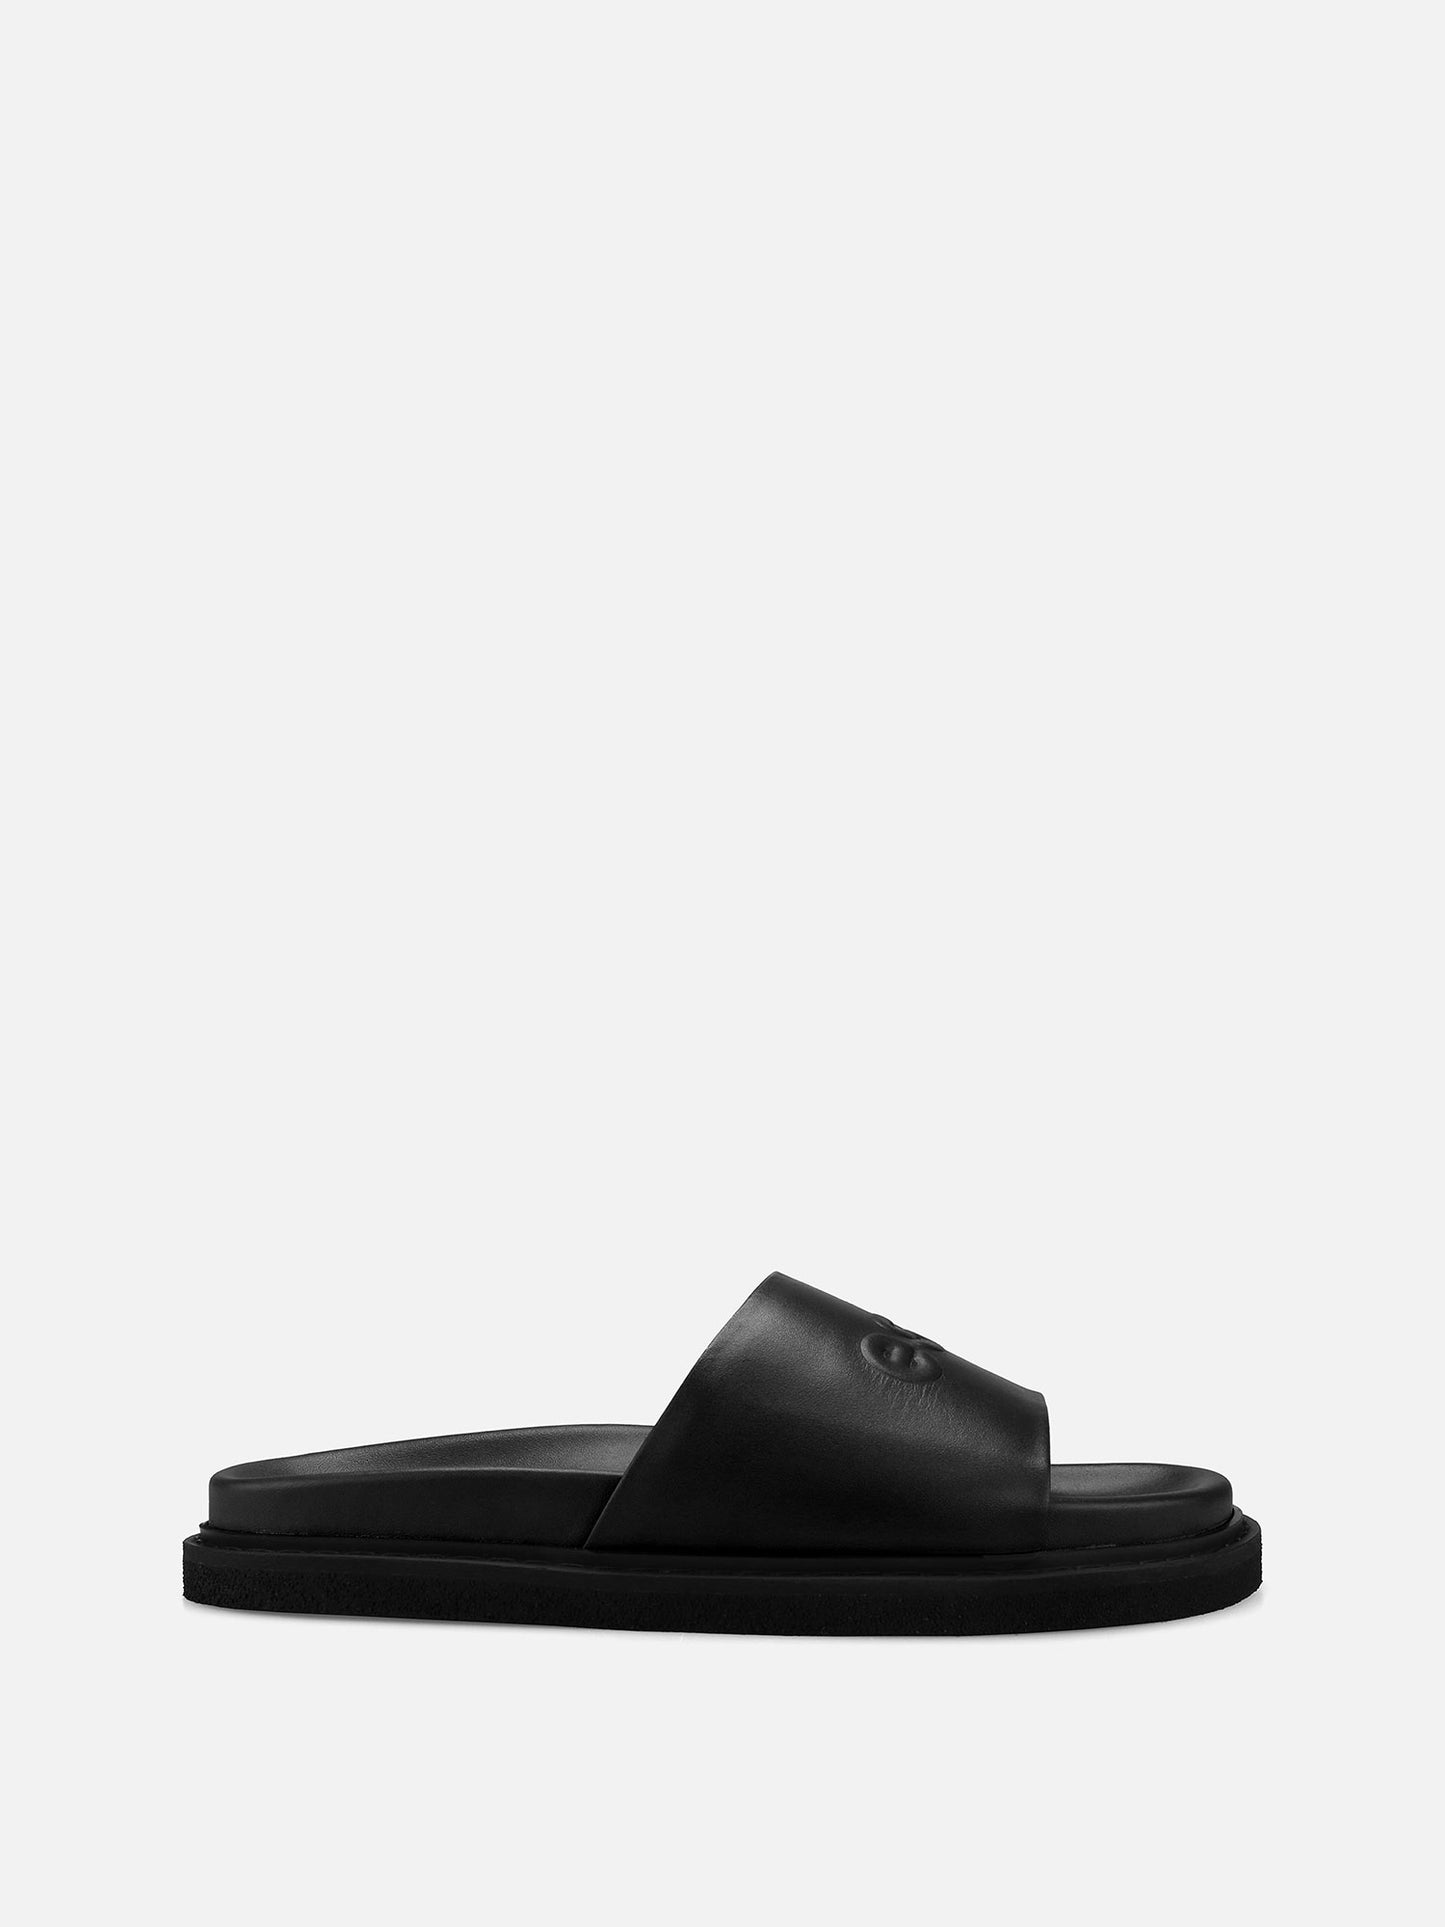 COLABA Leather Slides - Black